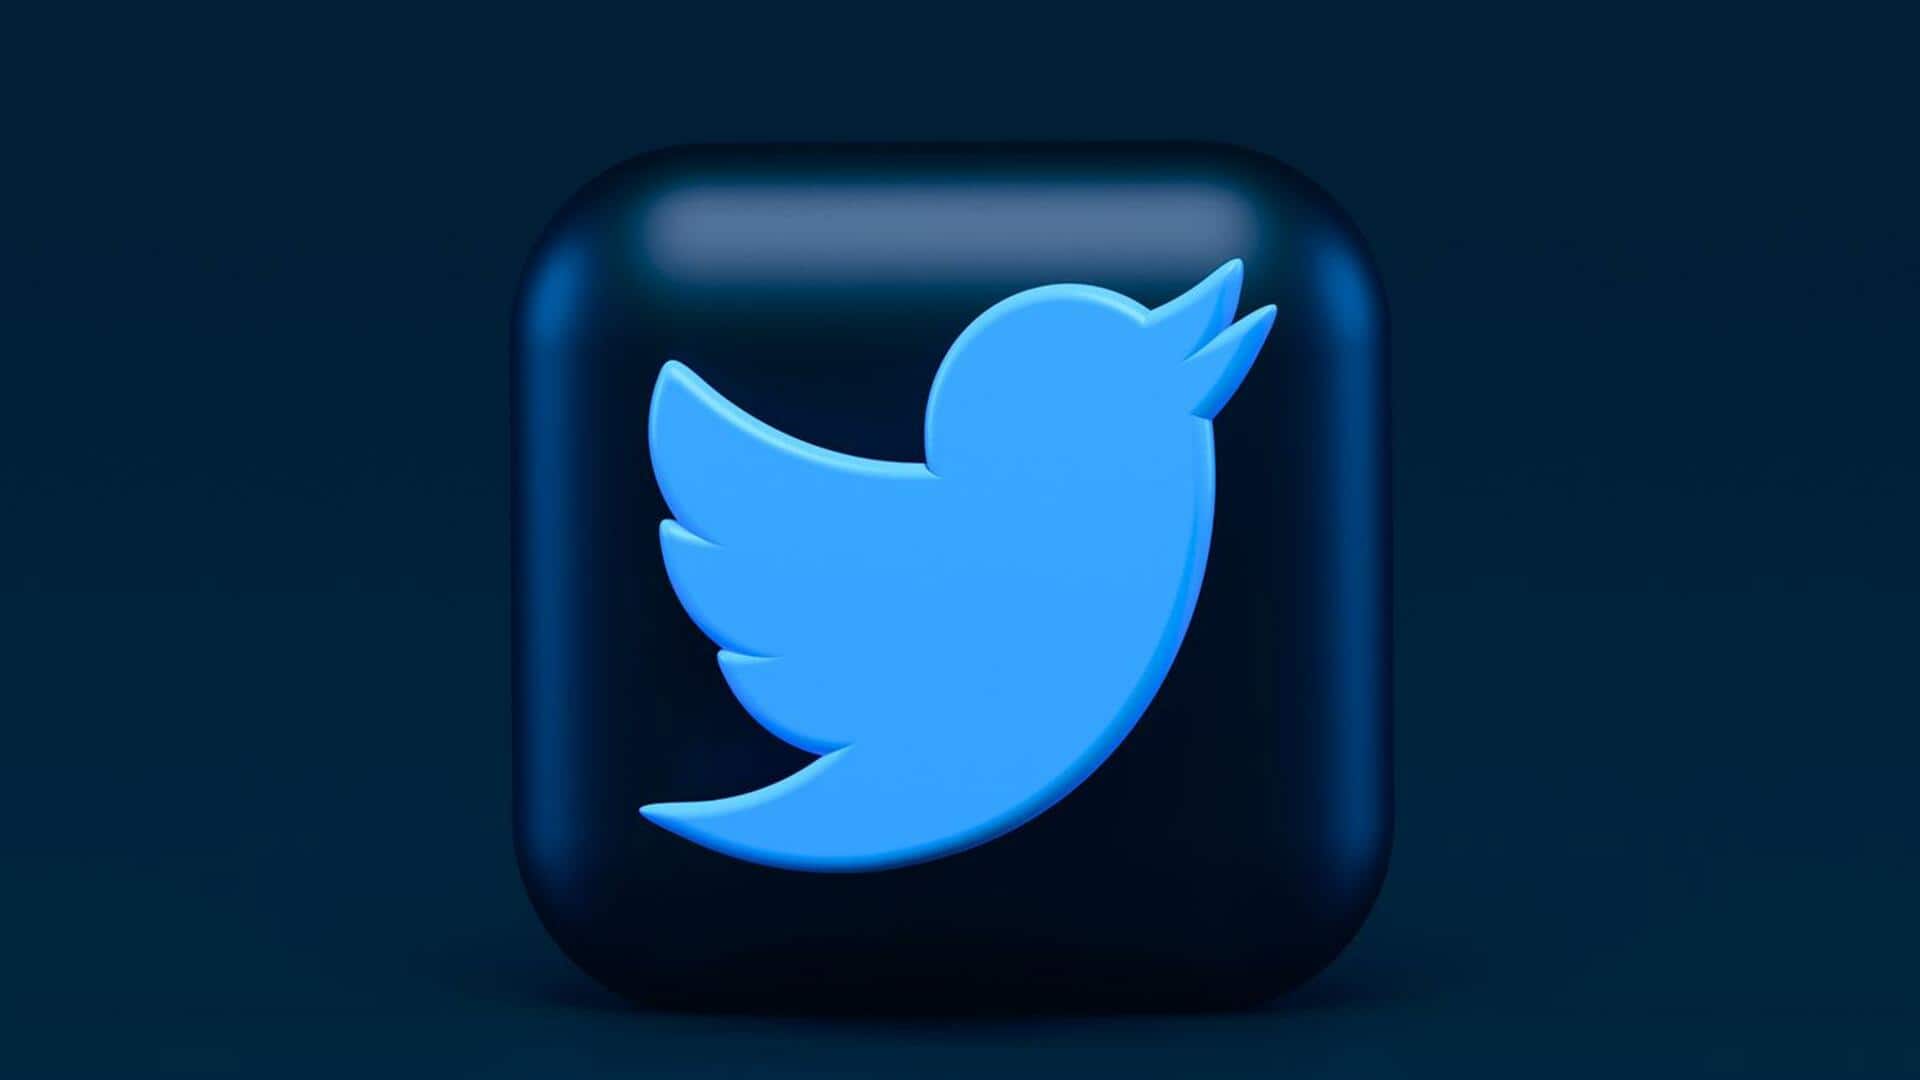 ट्विटर यूजर्स आज से फ्री में नहीं इस्तेमाल कर सकेंगे यह महत्वपूर्ण सिक्योरिटी फीचर